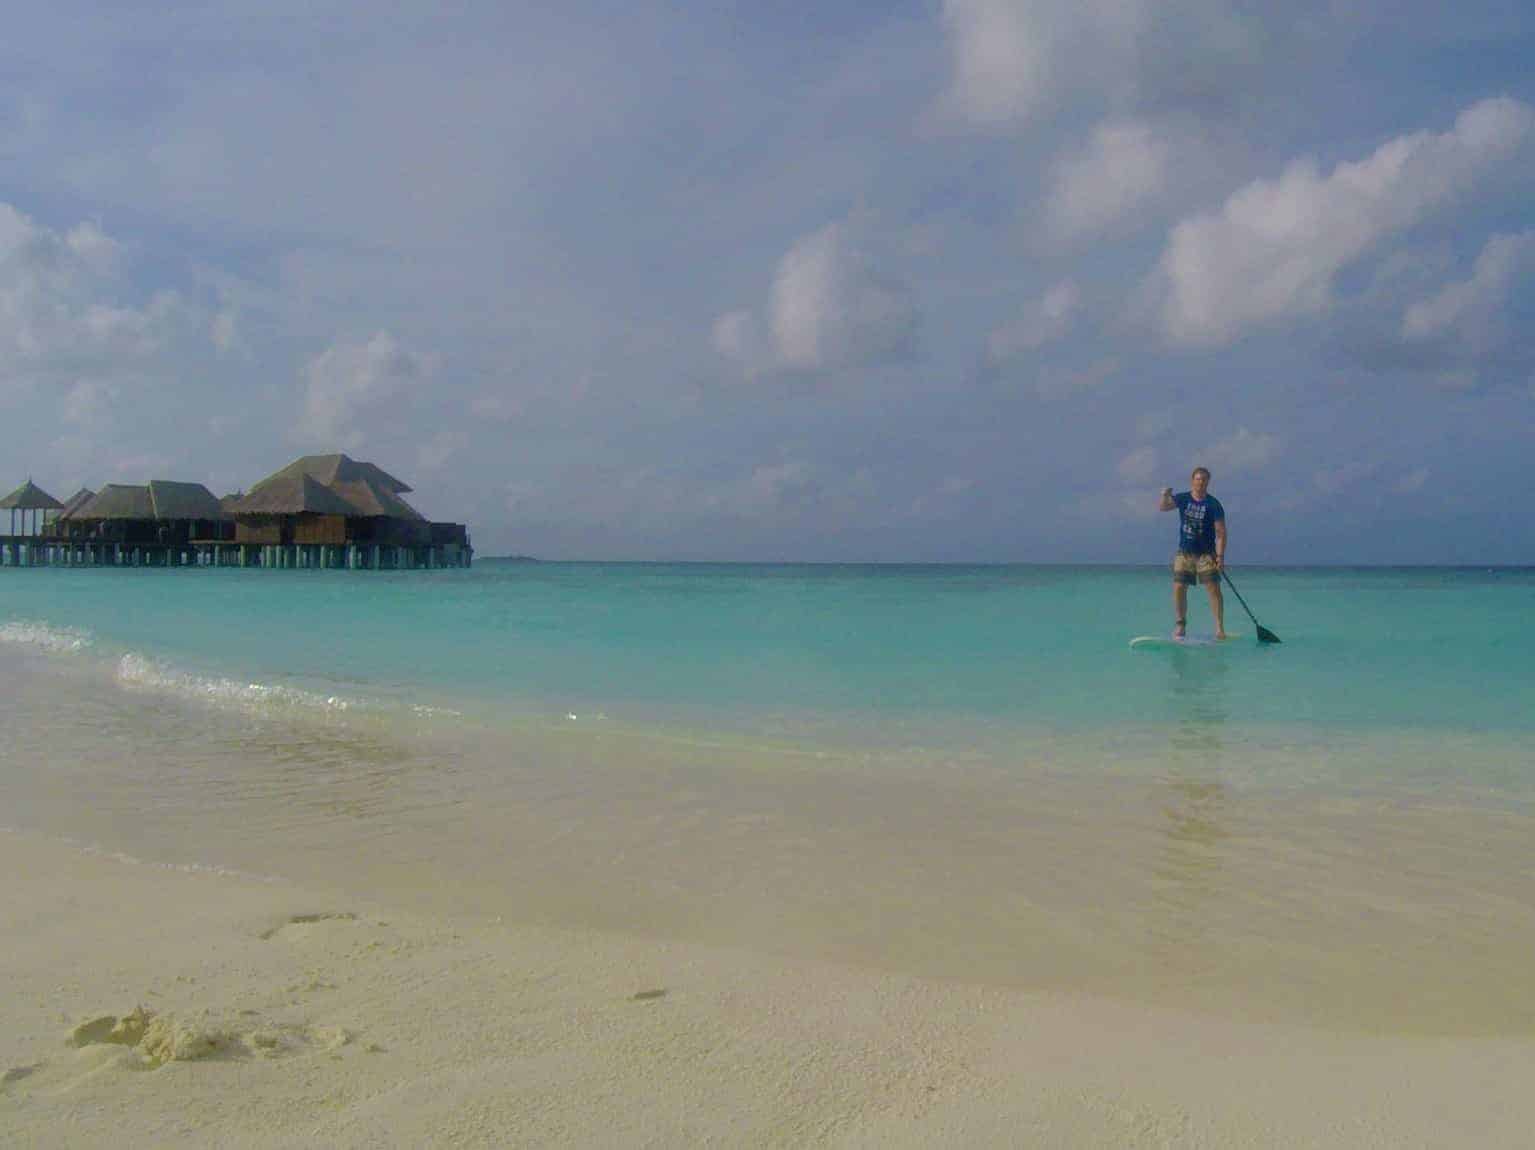 J'étais sur le SUP tous les jours à Bodu Hithi - un entraînement idéal en vacances. Carnet de voyage Coco Bodu Hithi Maldives expériences